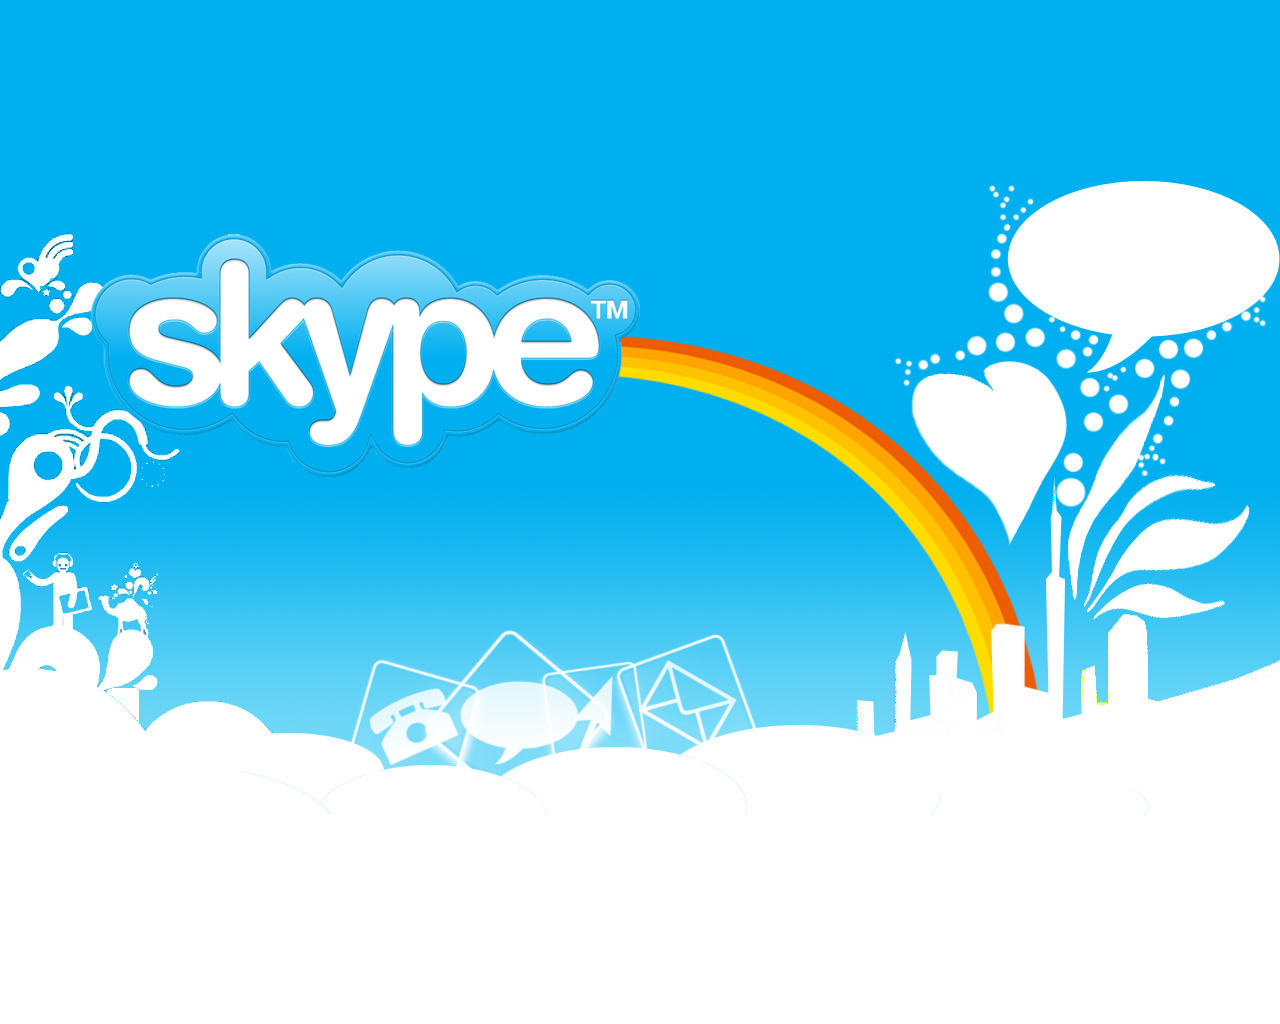 callnote skype download